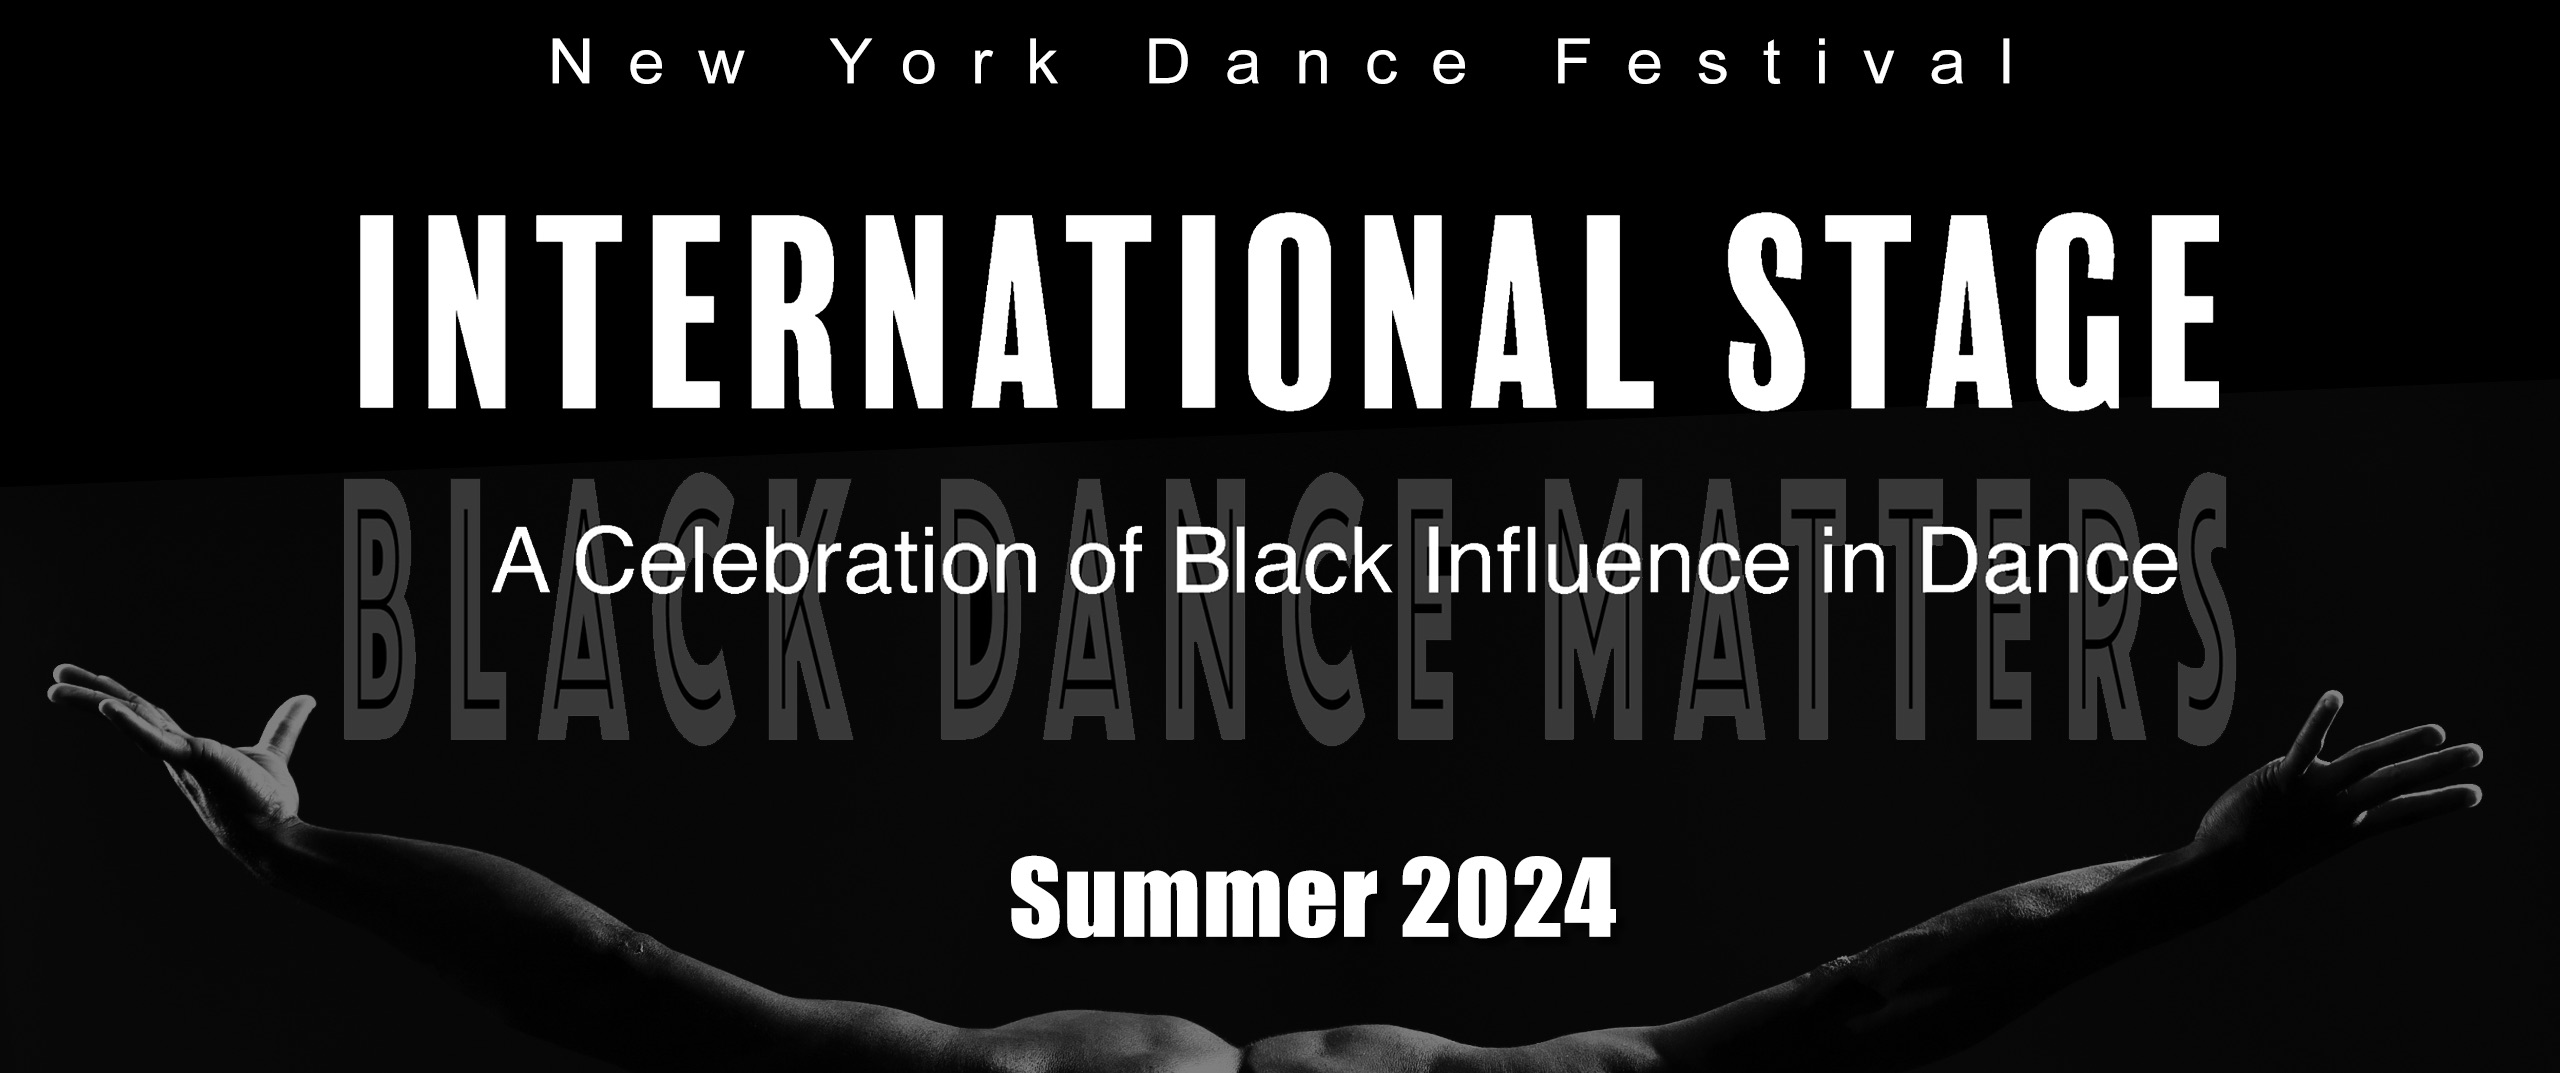 New York Dance Festival New York Dance Festival